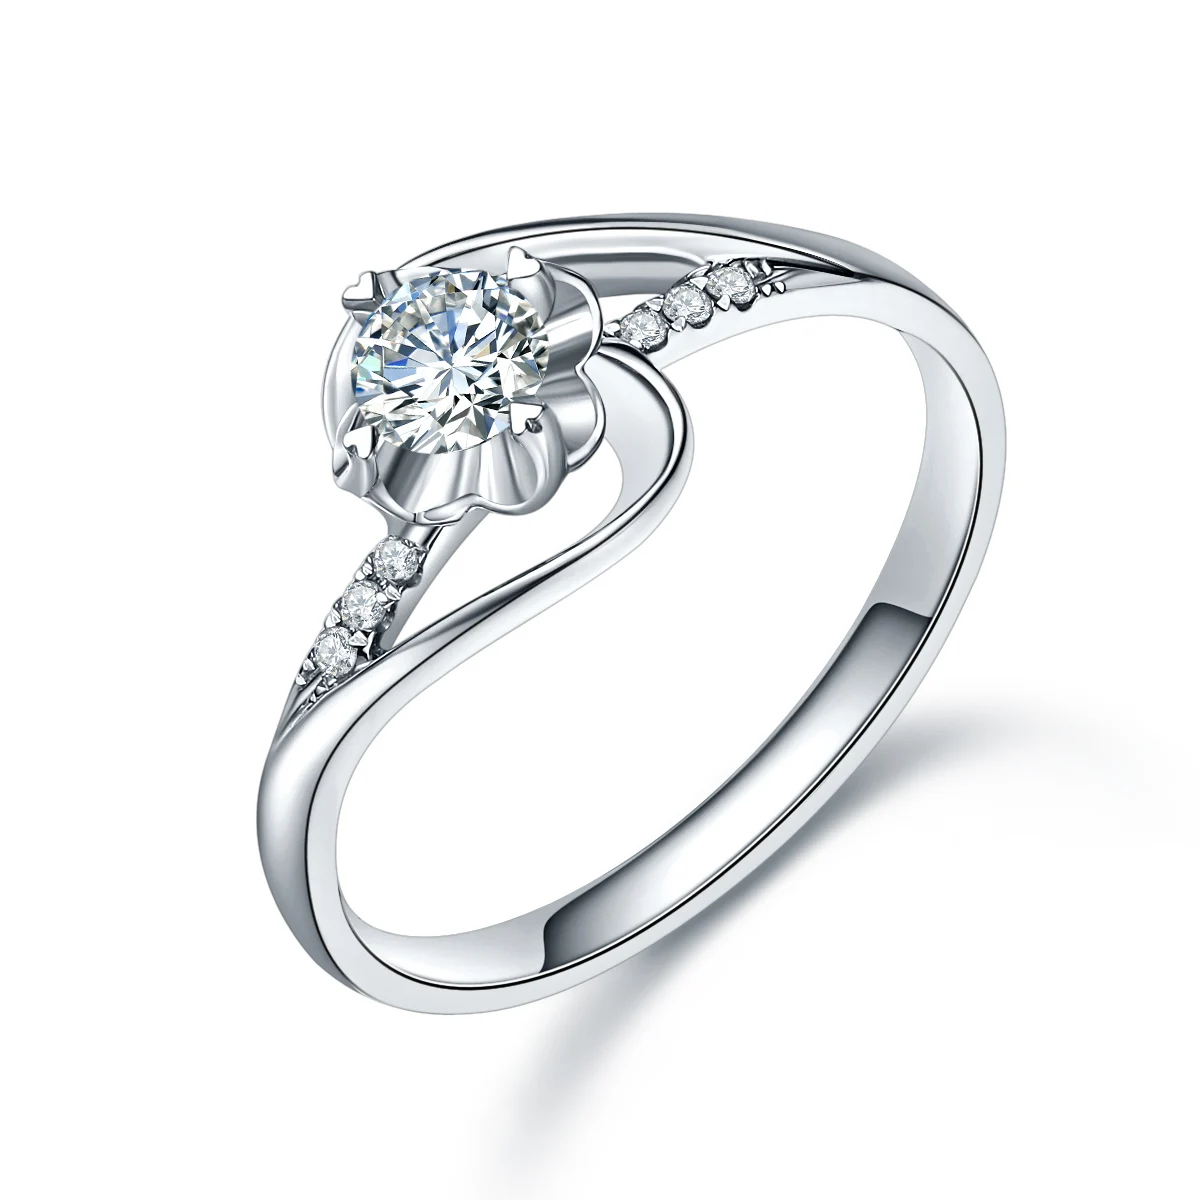 18 К золота и белого золота PT950 кольцо с бриллиантом Для мужчин и Для женщин замуж брака предложение кольцо с бриллиантом Подлинная